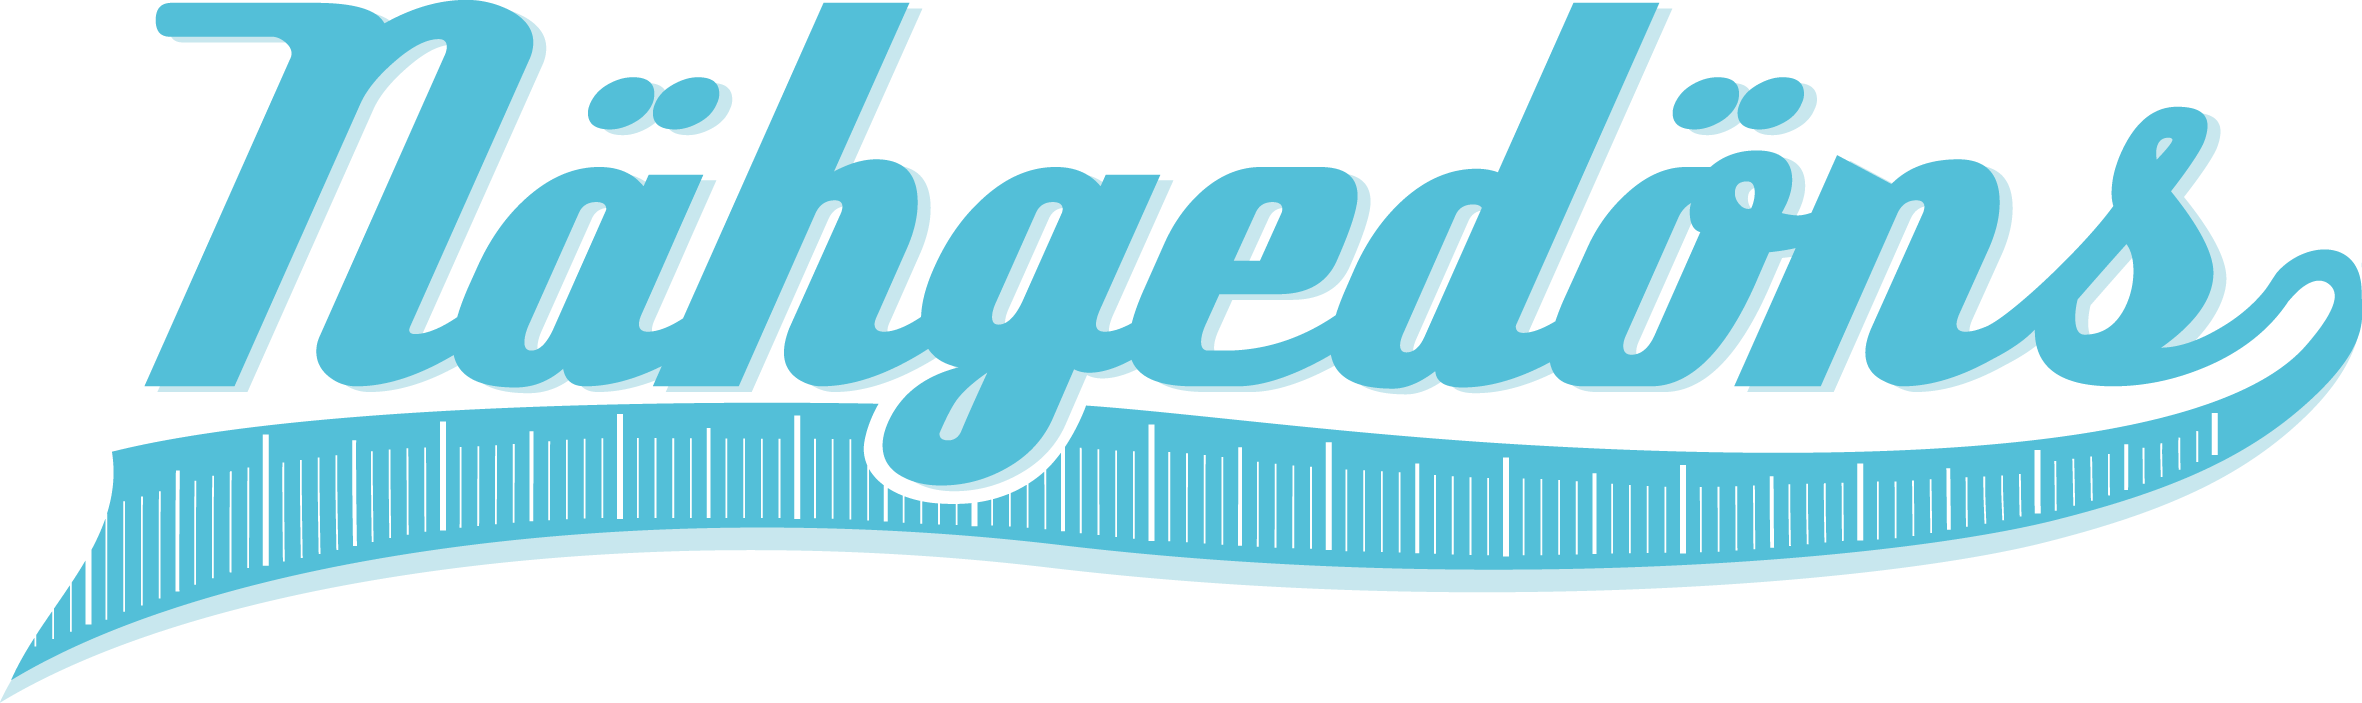 Nähgedöns Logo